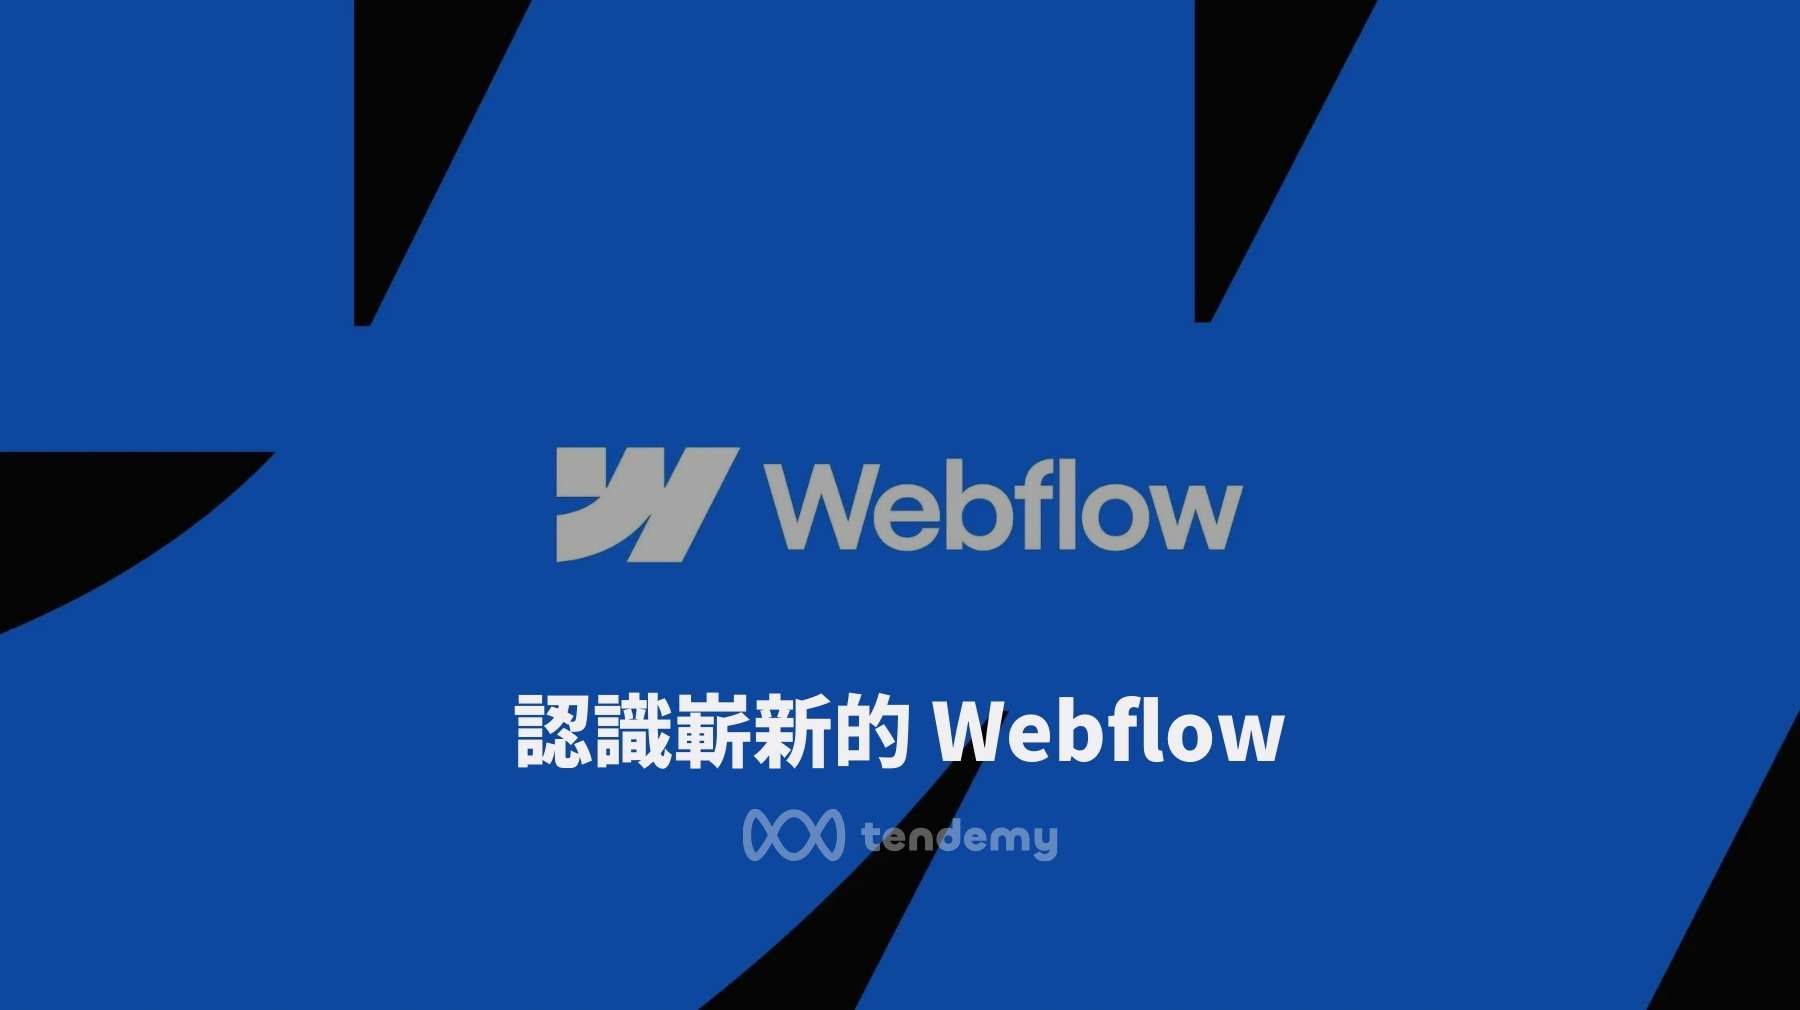 Webflow CEO 公開信: 認識嶄新的 Webflow